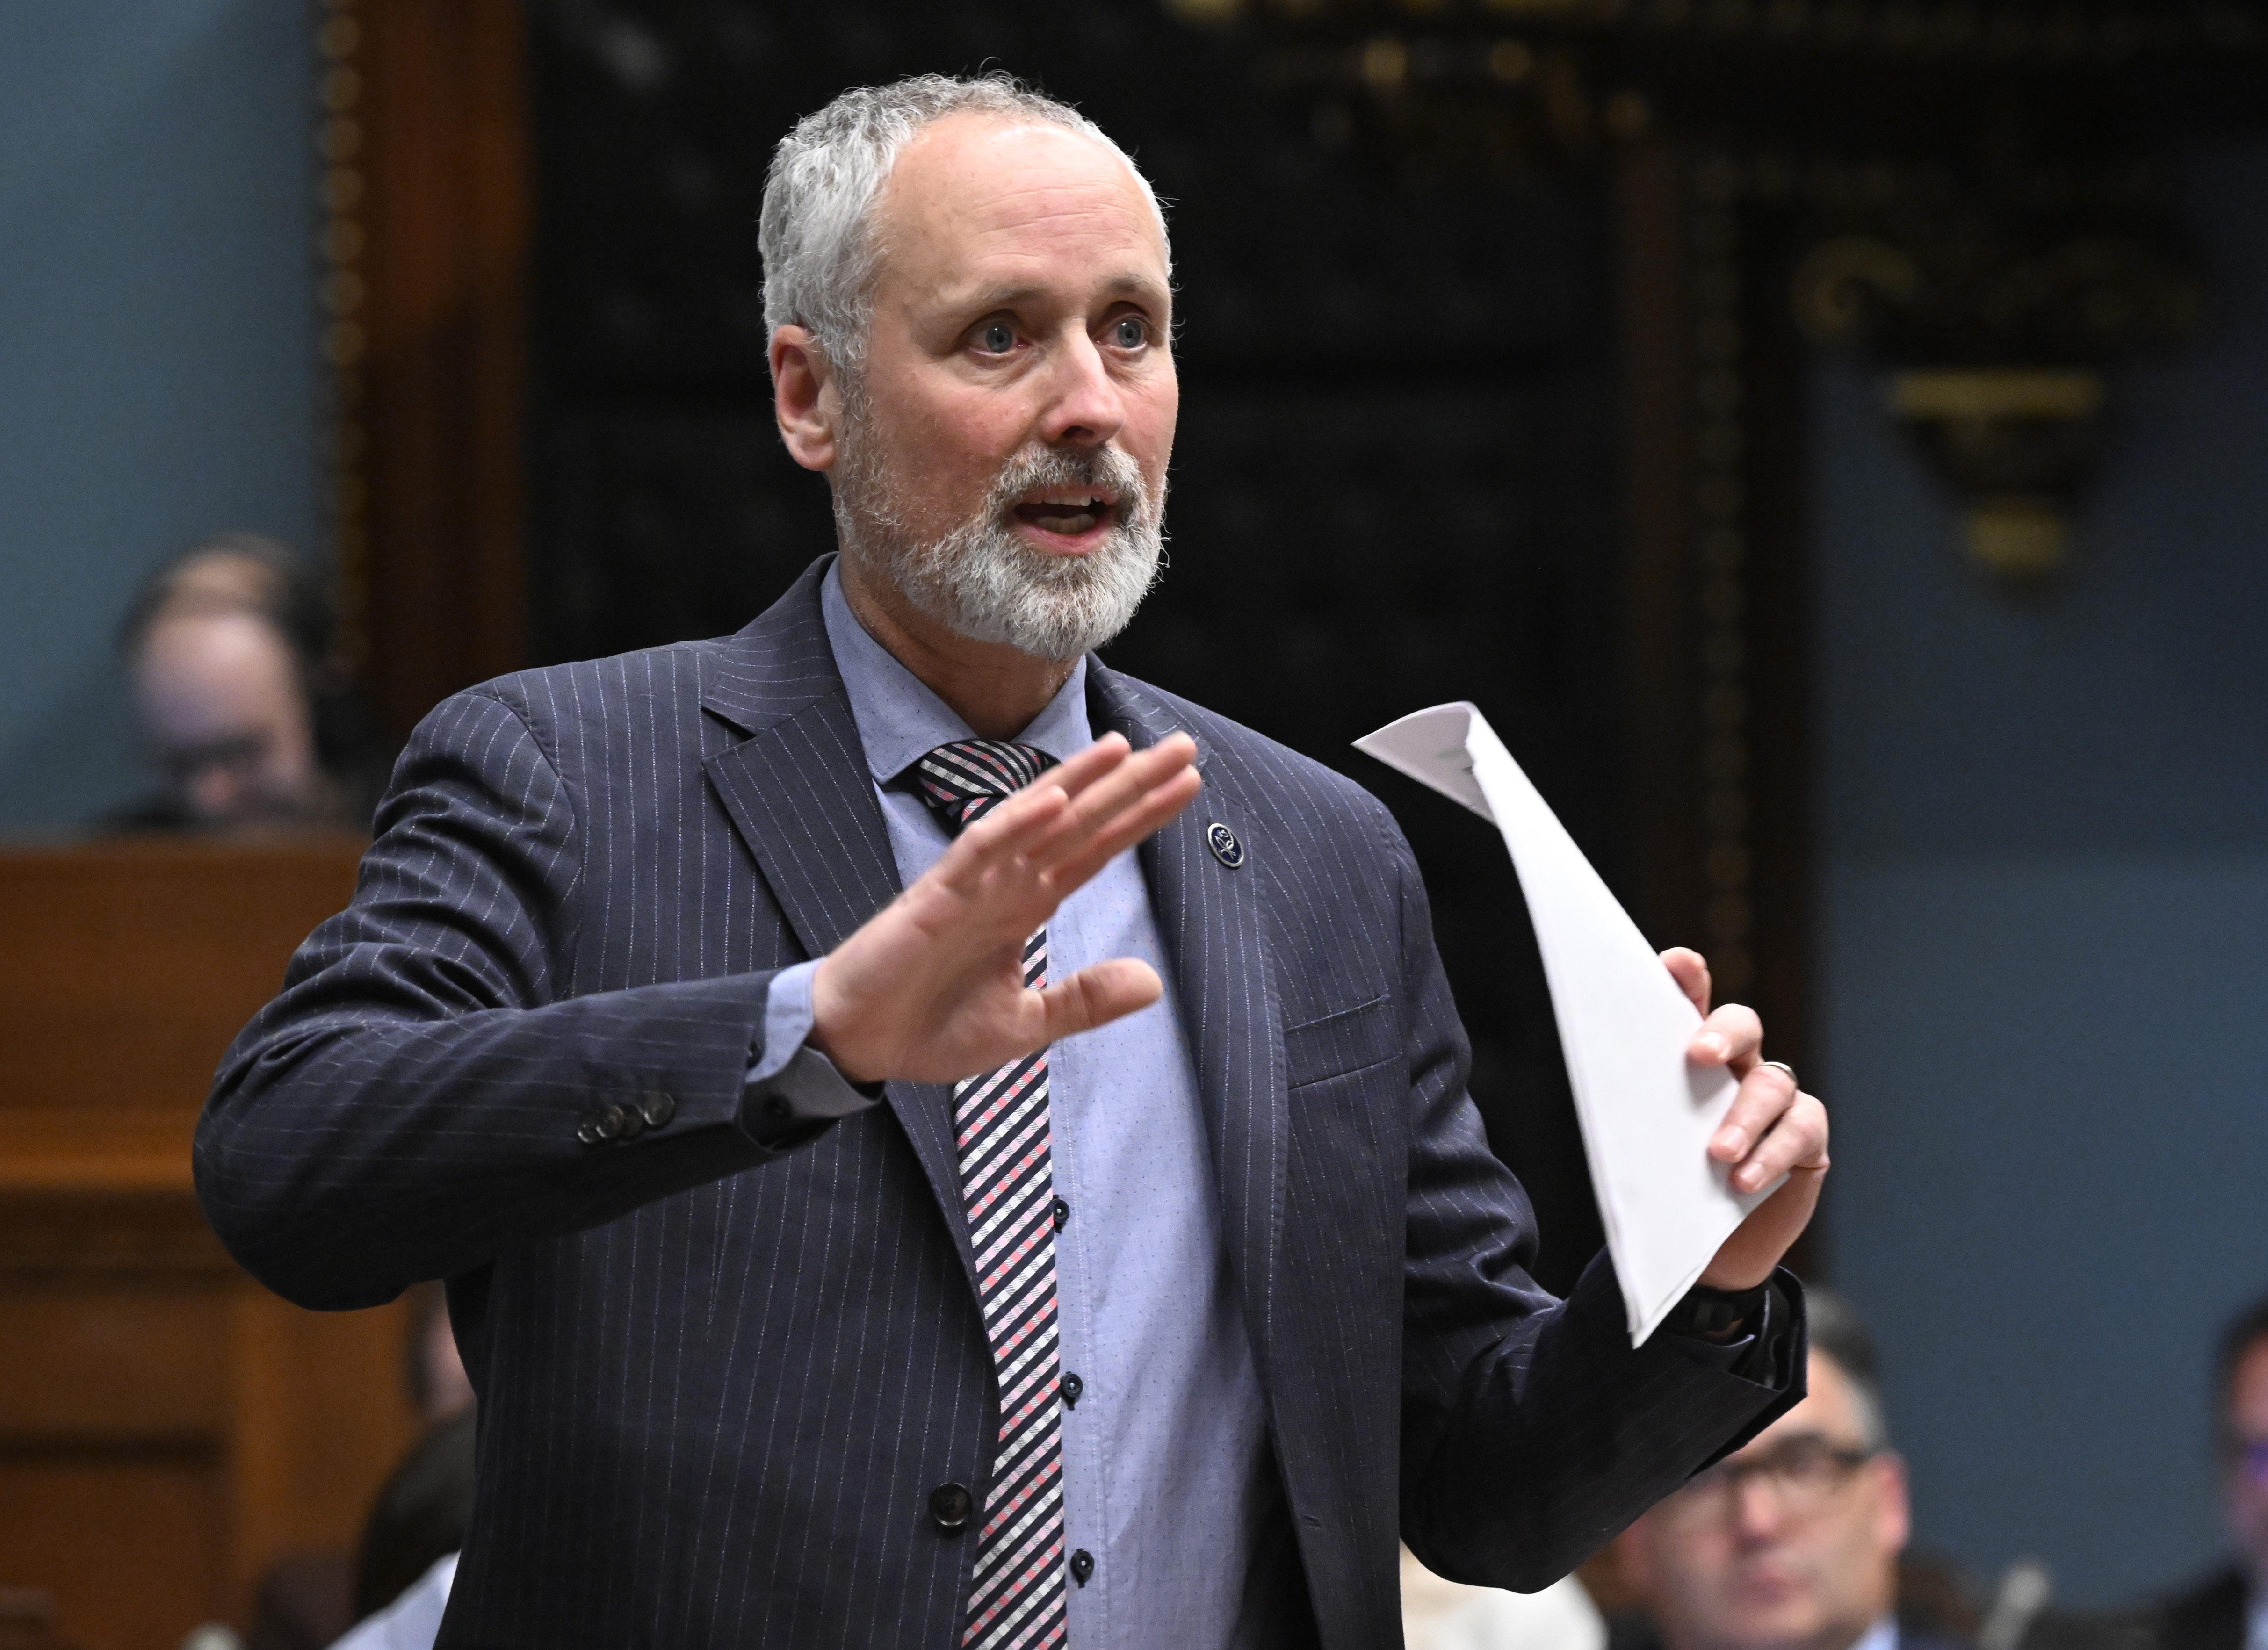 Le député québécois solidaire Vincent Marissal interroge le gouvernement lors de la période des questions, le mardi 23 mai 2023 à l'Assemblée législative de Québec.